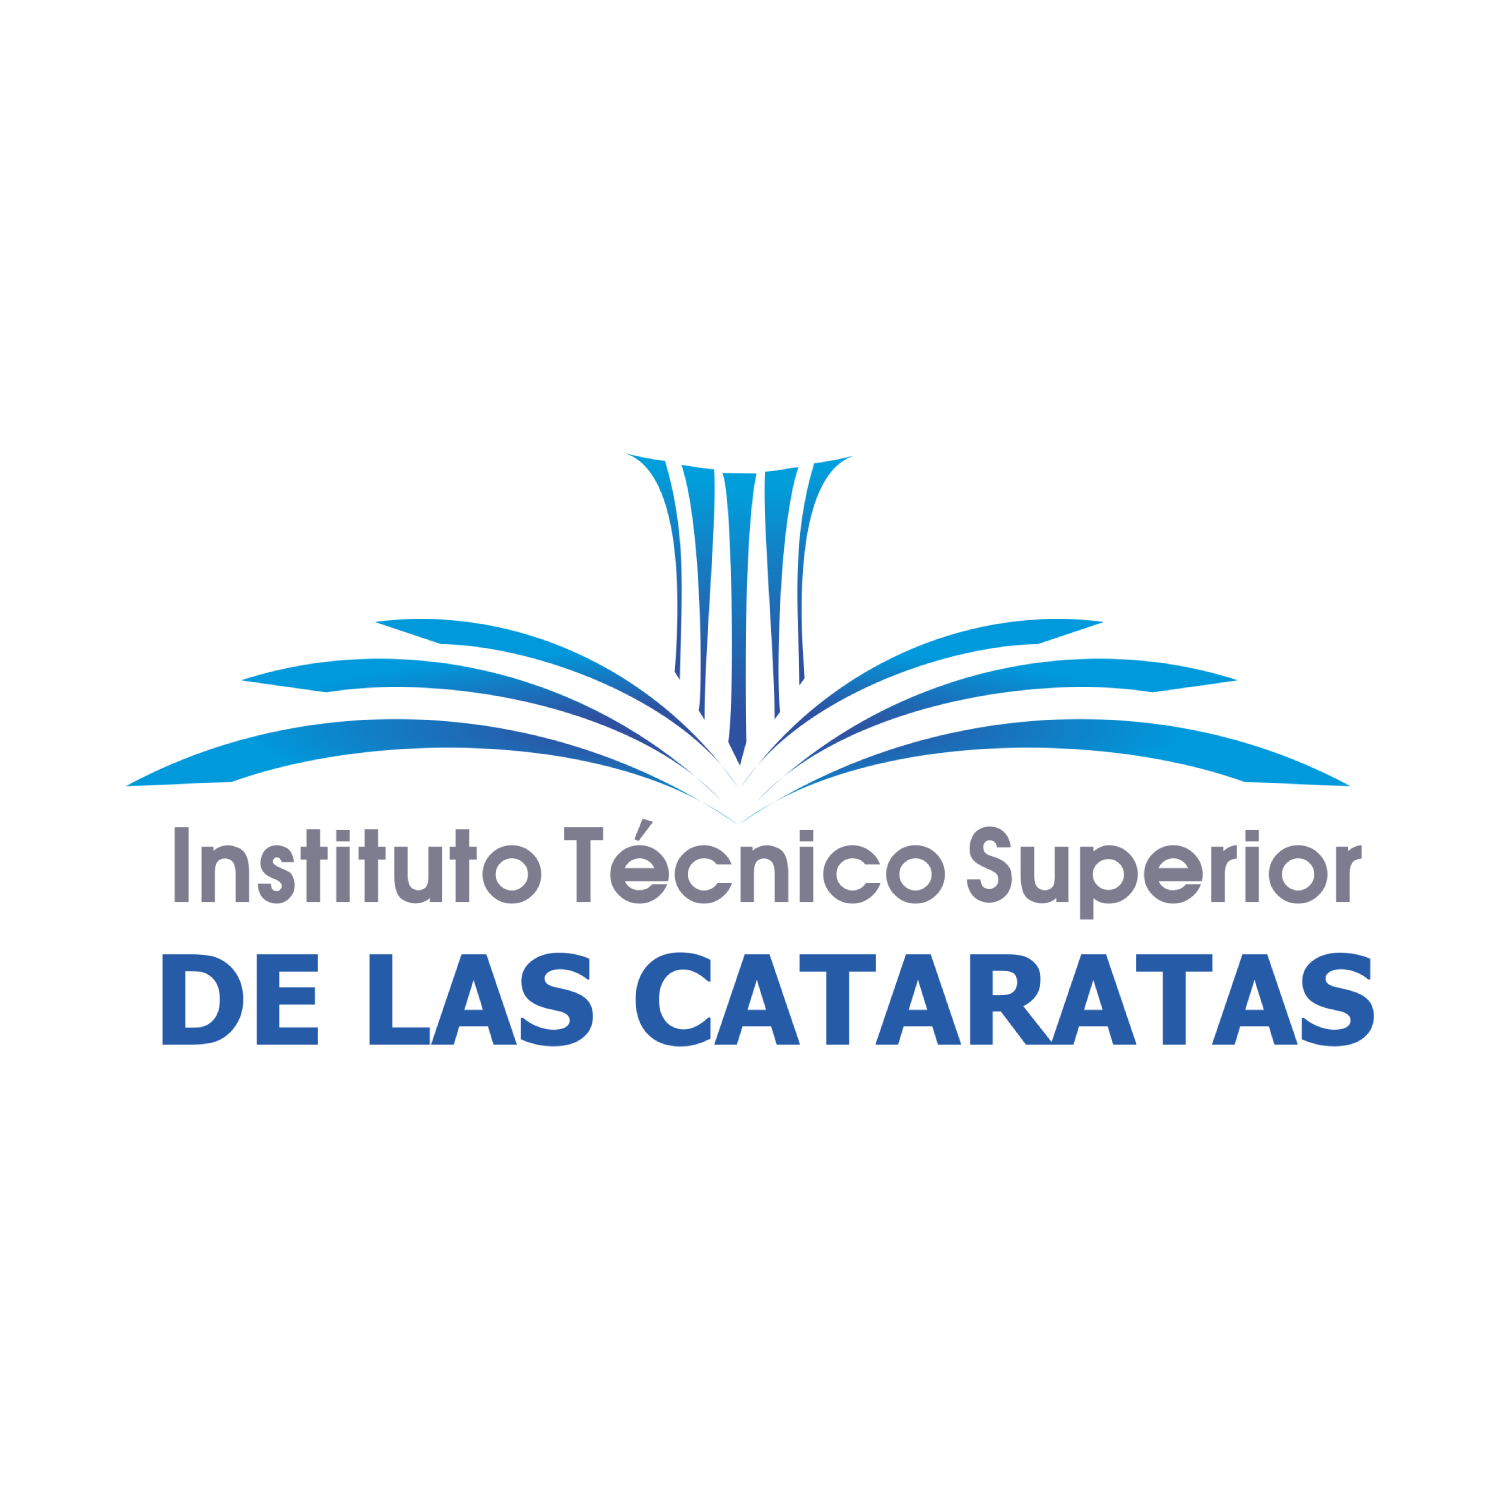 Instituto Técnico Superior De Las Cataratas